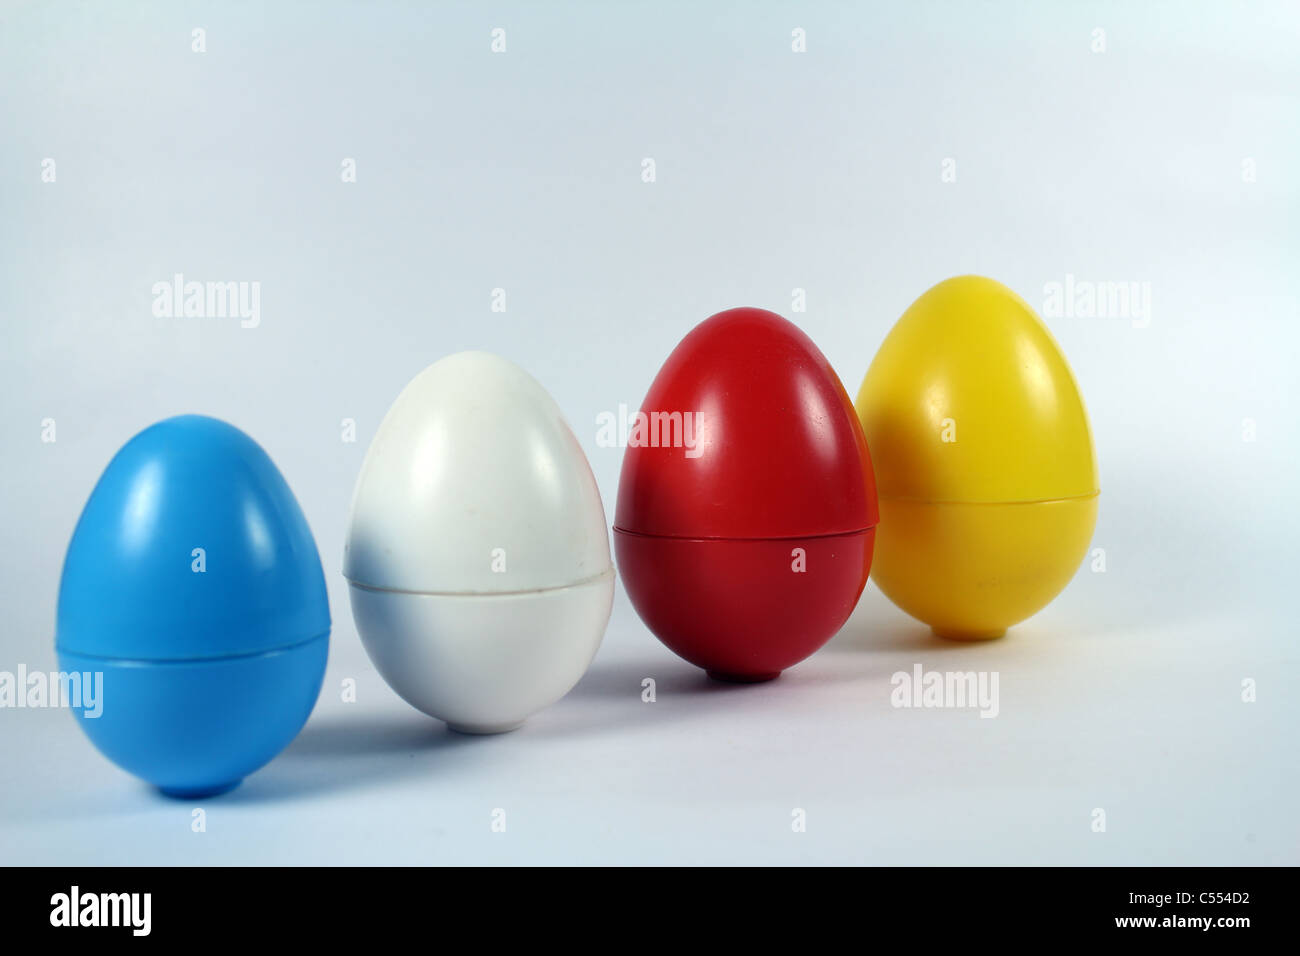 Inquadratura concettuale di uova di plastica di diverse dimensioni Foto Stock